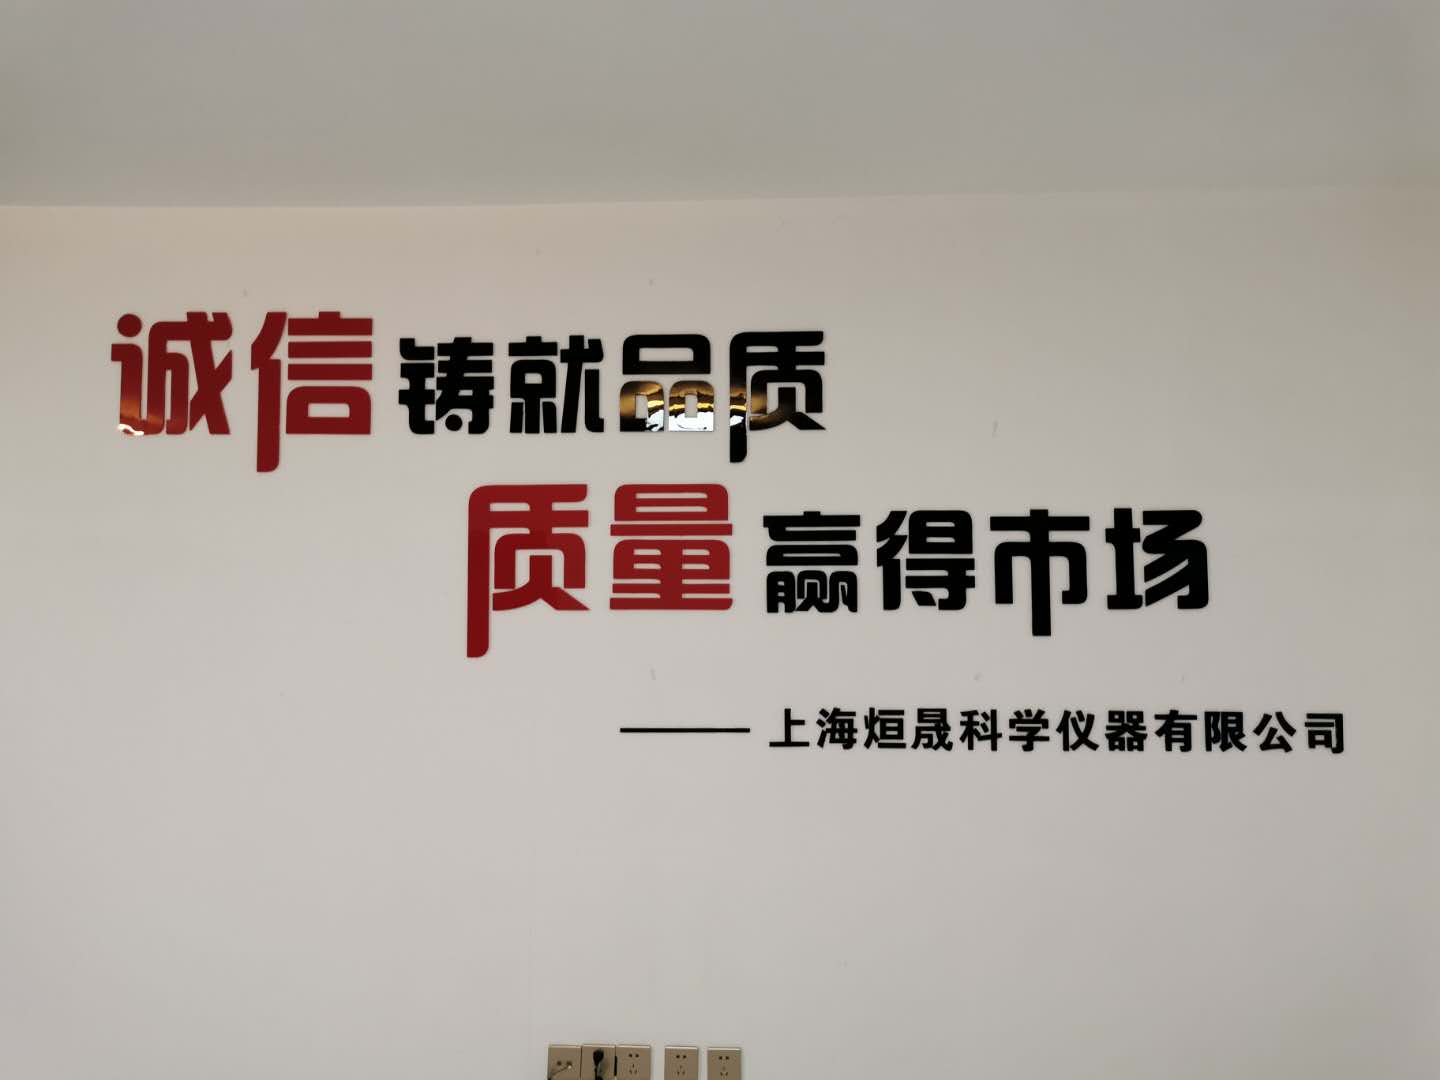 上海烜晟 气相色谱仪生产厂家